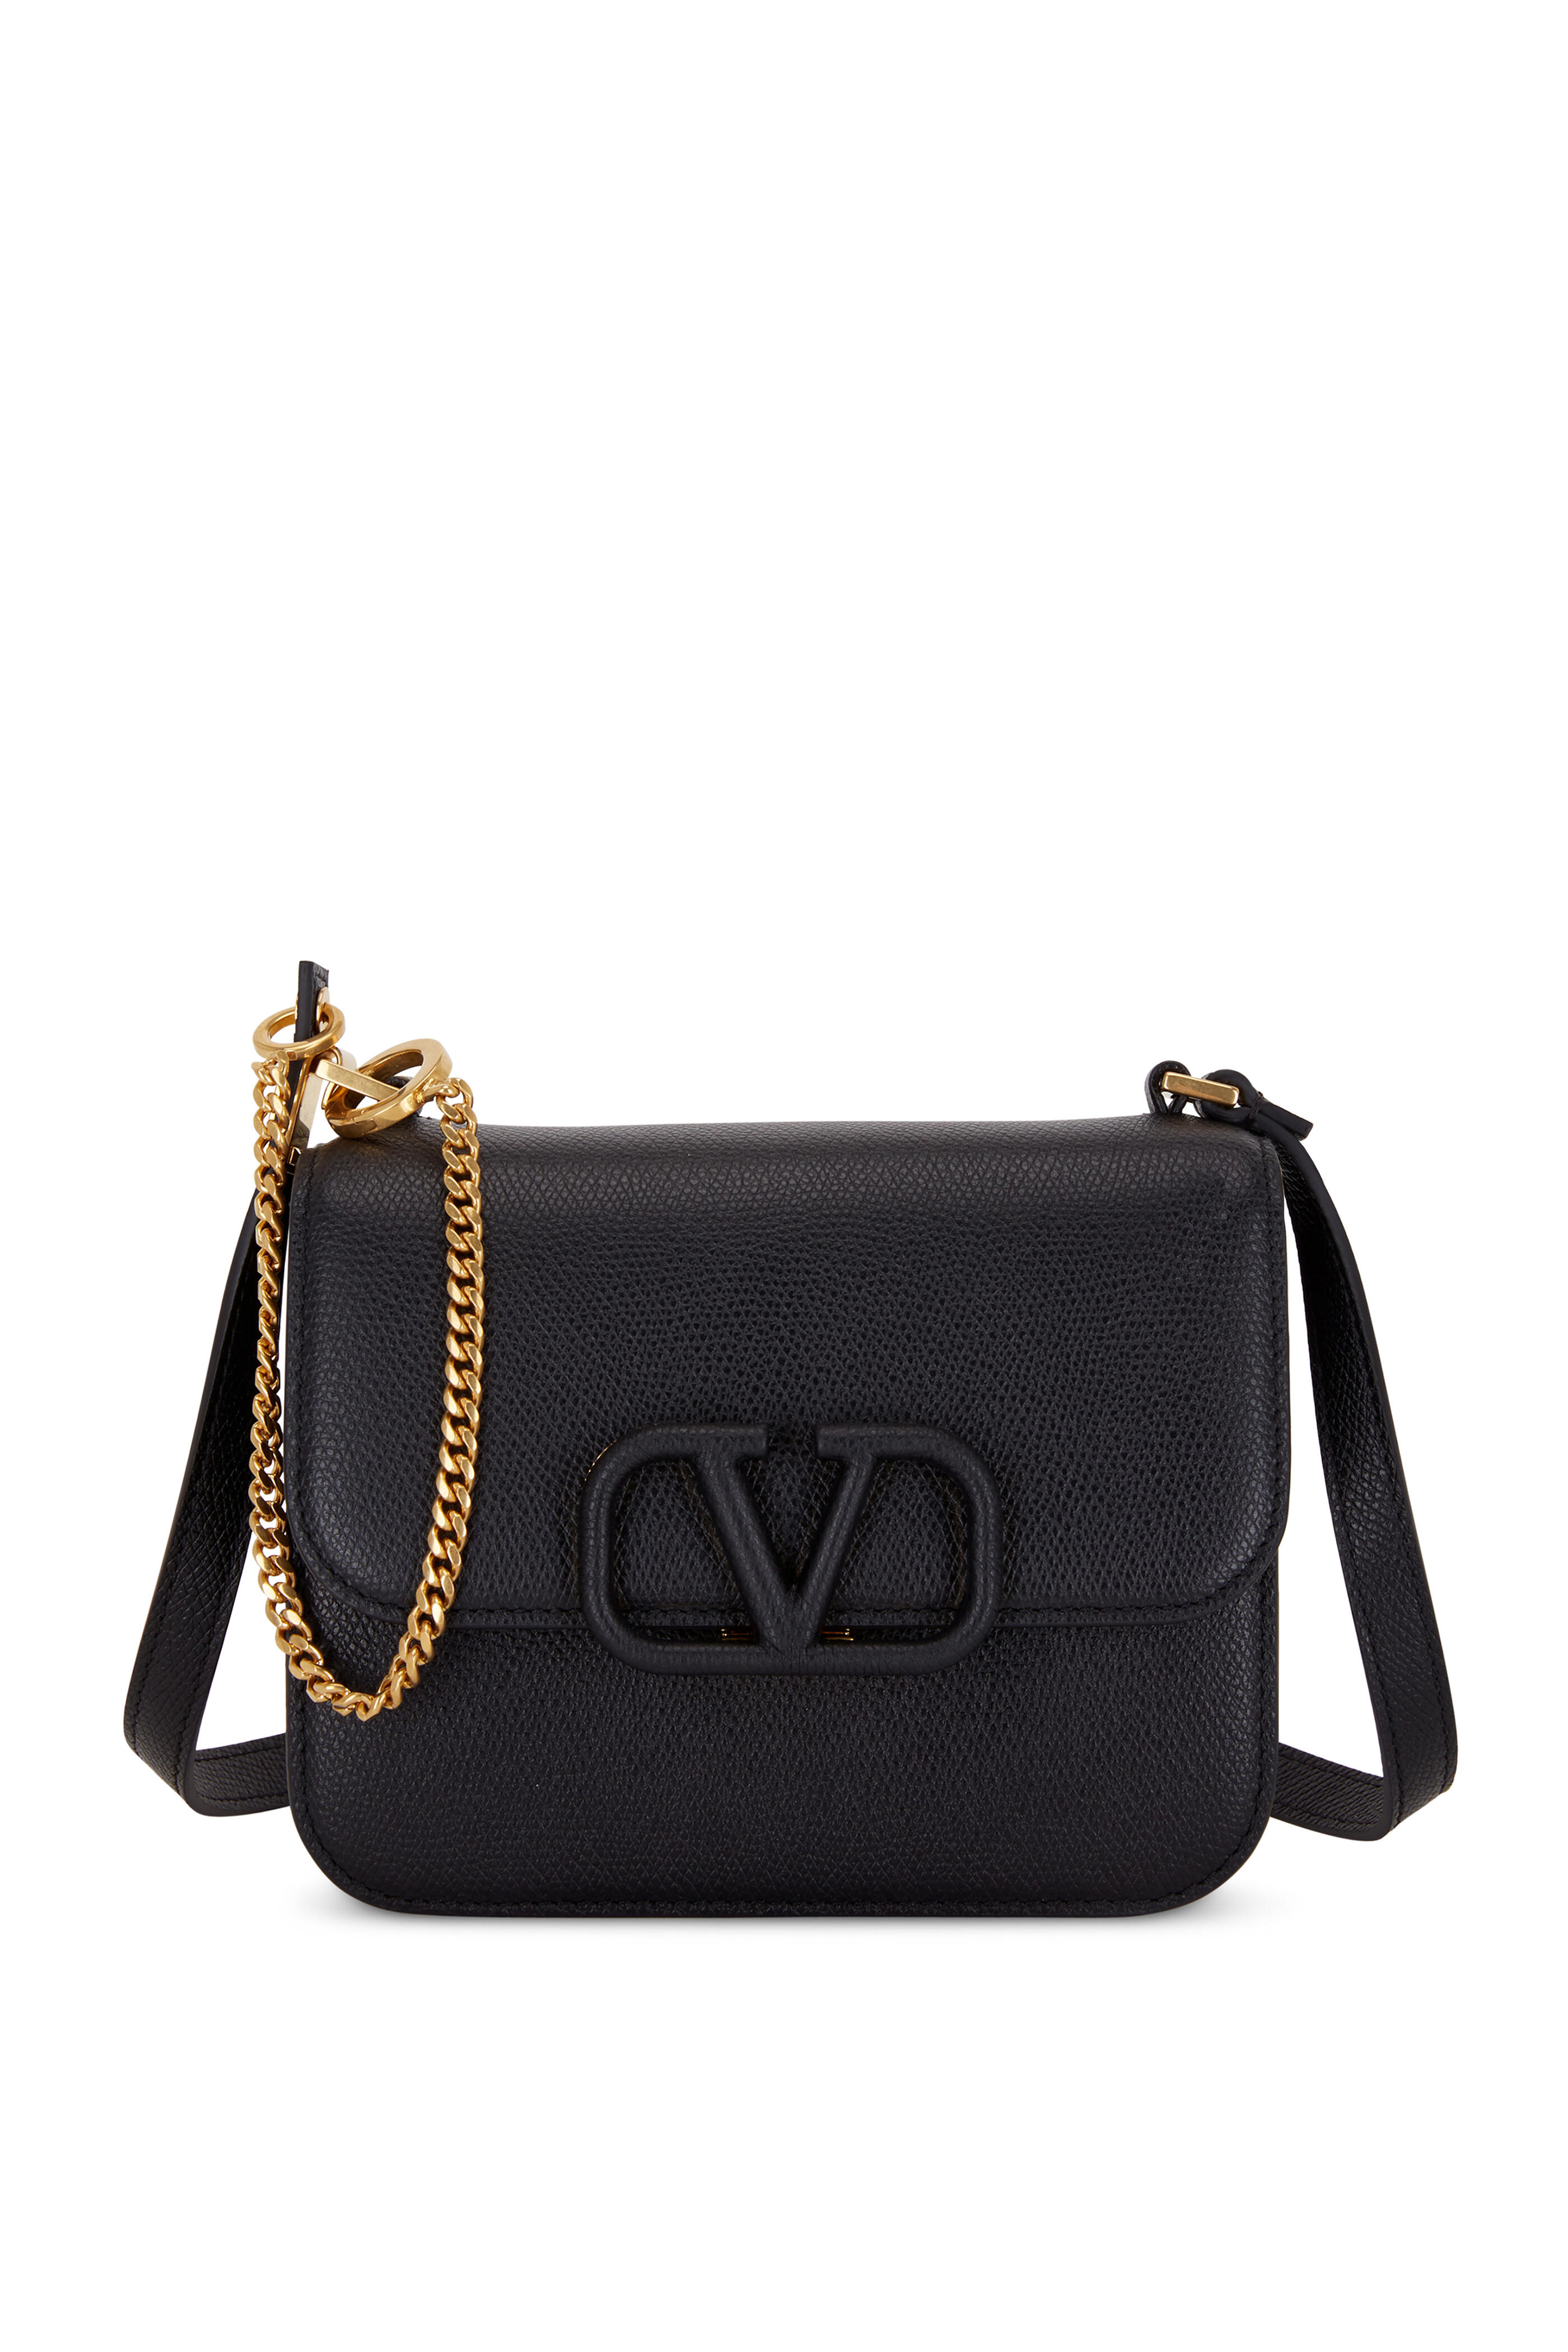 VALENTINO GARAVANI V Logo Chain Shoulder Bag Leather Black White Purse  90193837